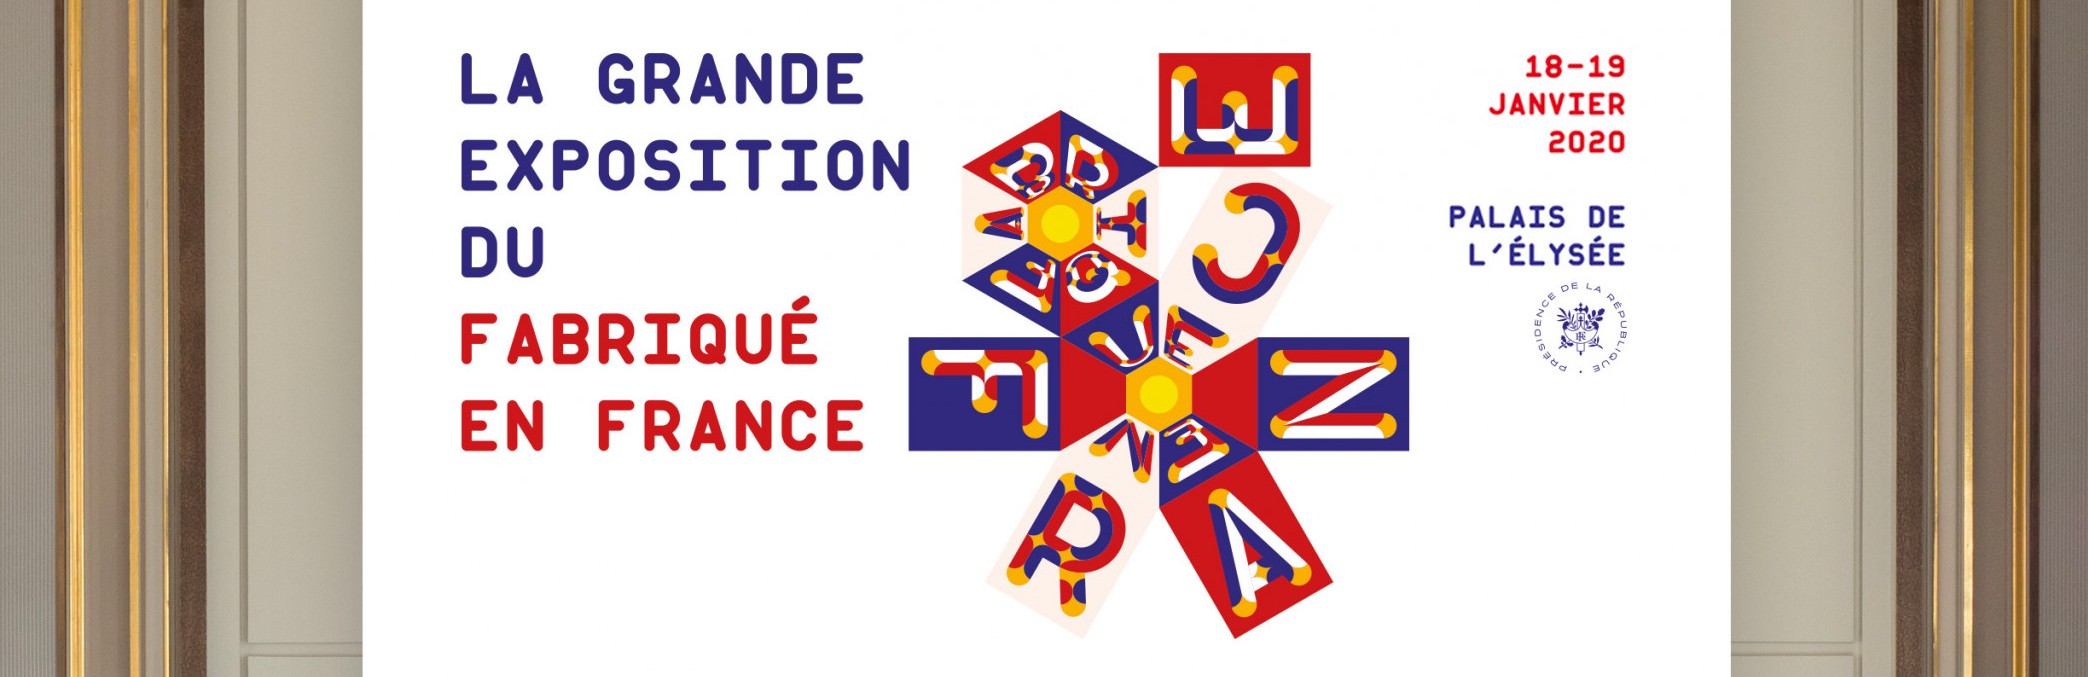 exposition fabriqué en France du 18 au 19 janvier 2020 au palais de l'Elysée